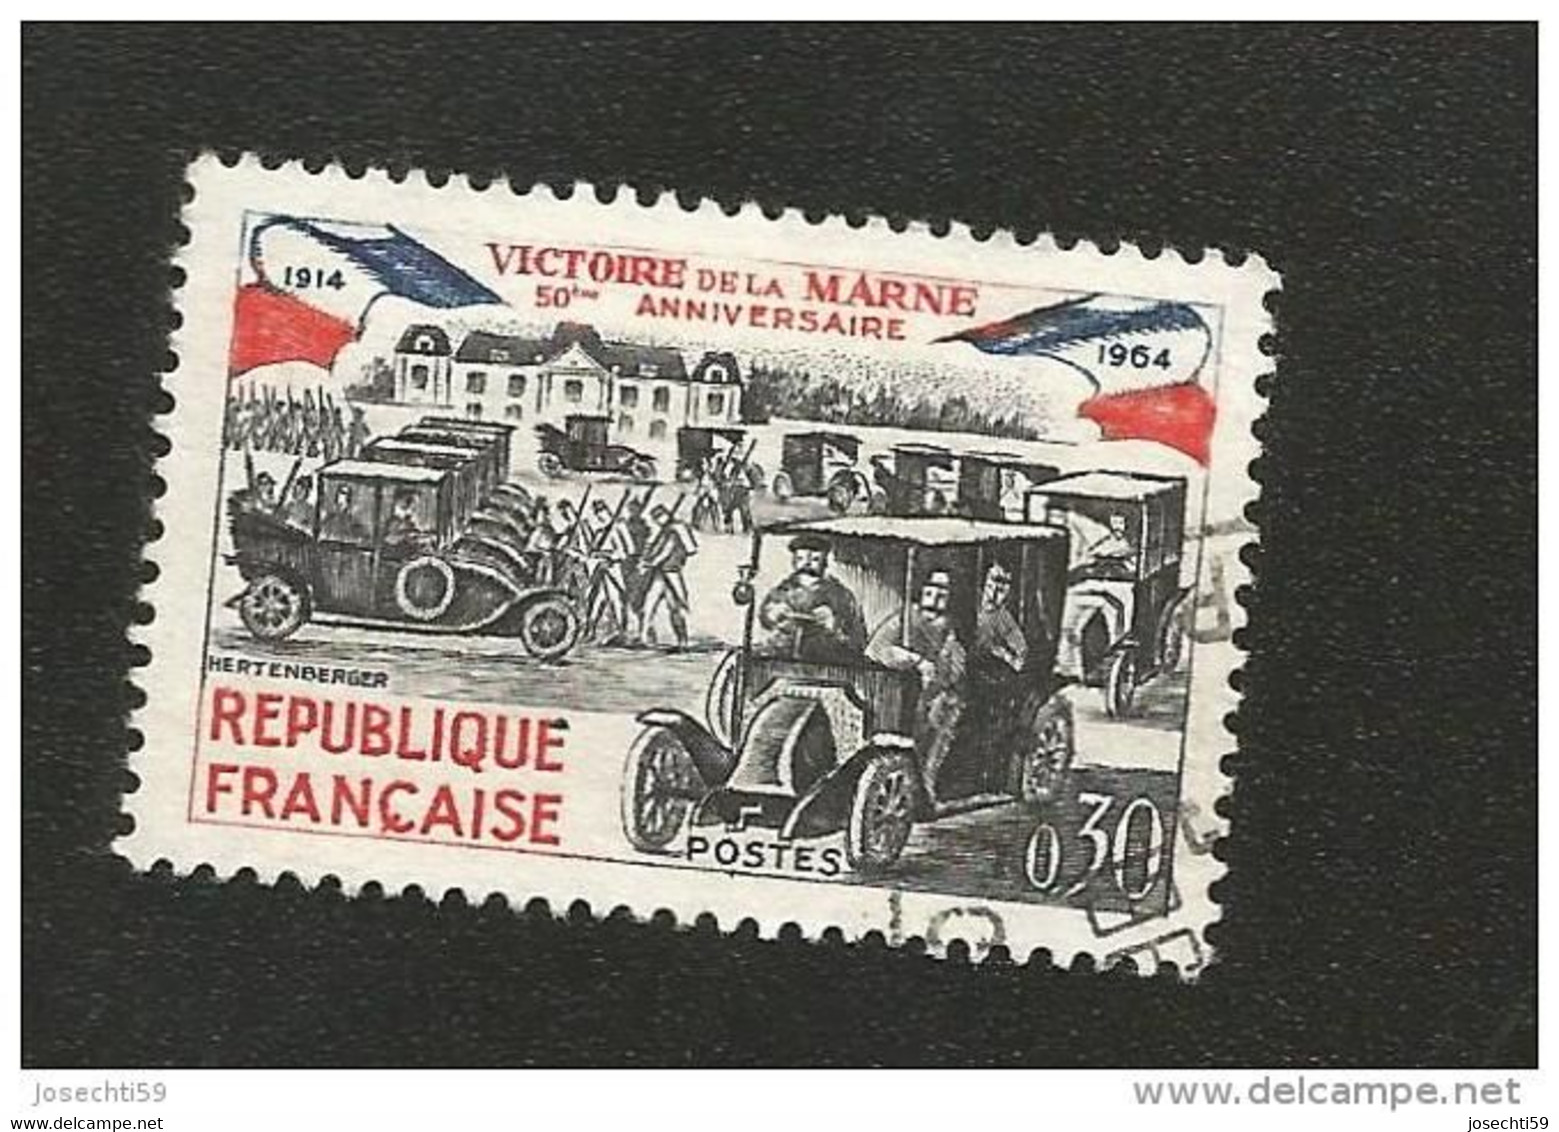 N° 1429 Victoire De La Marne 50ème Anniversaire Variété Encre Baveuse  Timbre  France Oblitéré 1964 - Oblitérés